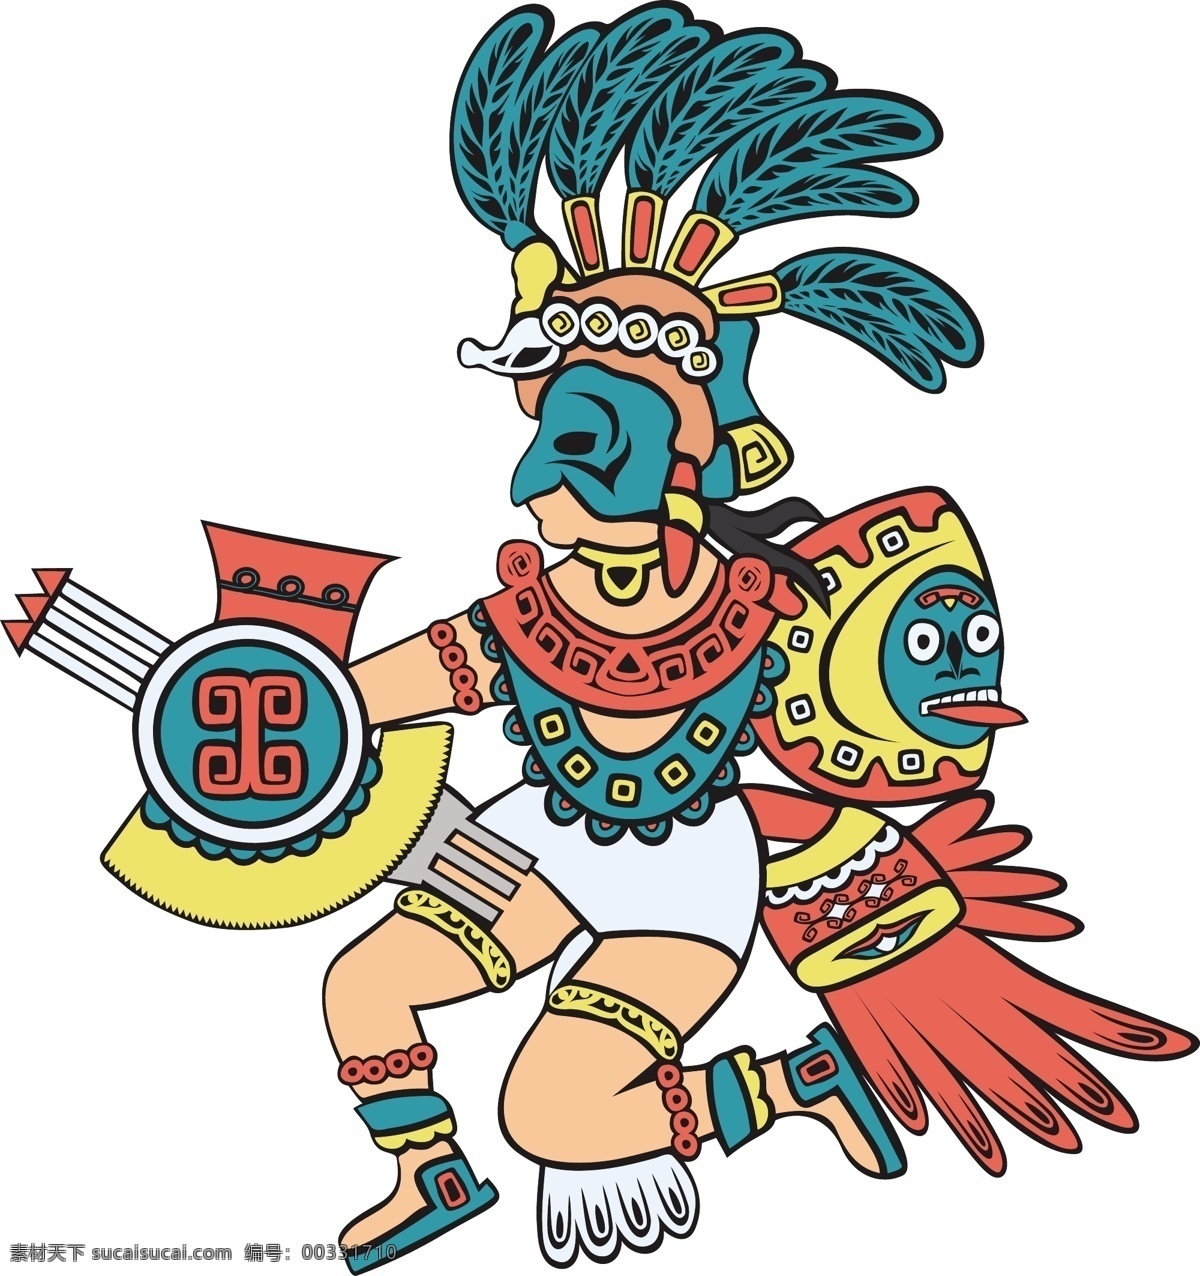 玛雅武士 玛雅纹身 玛雅符号 玛雅 古代 古老 手绘 图腾 考古图案 符号 图形 人物 动物 线条 花纹 抽象 矢量 底纹背景 背景底纹 底纹边框